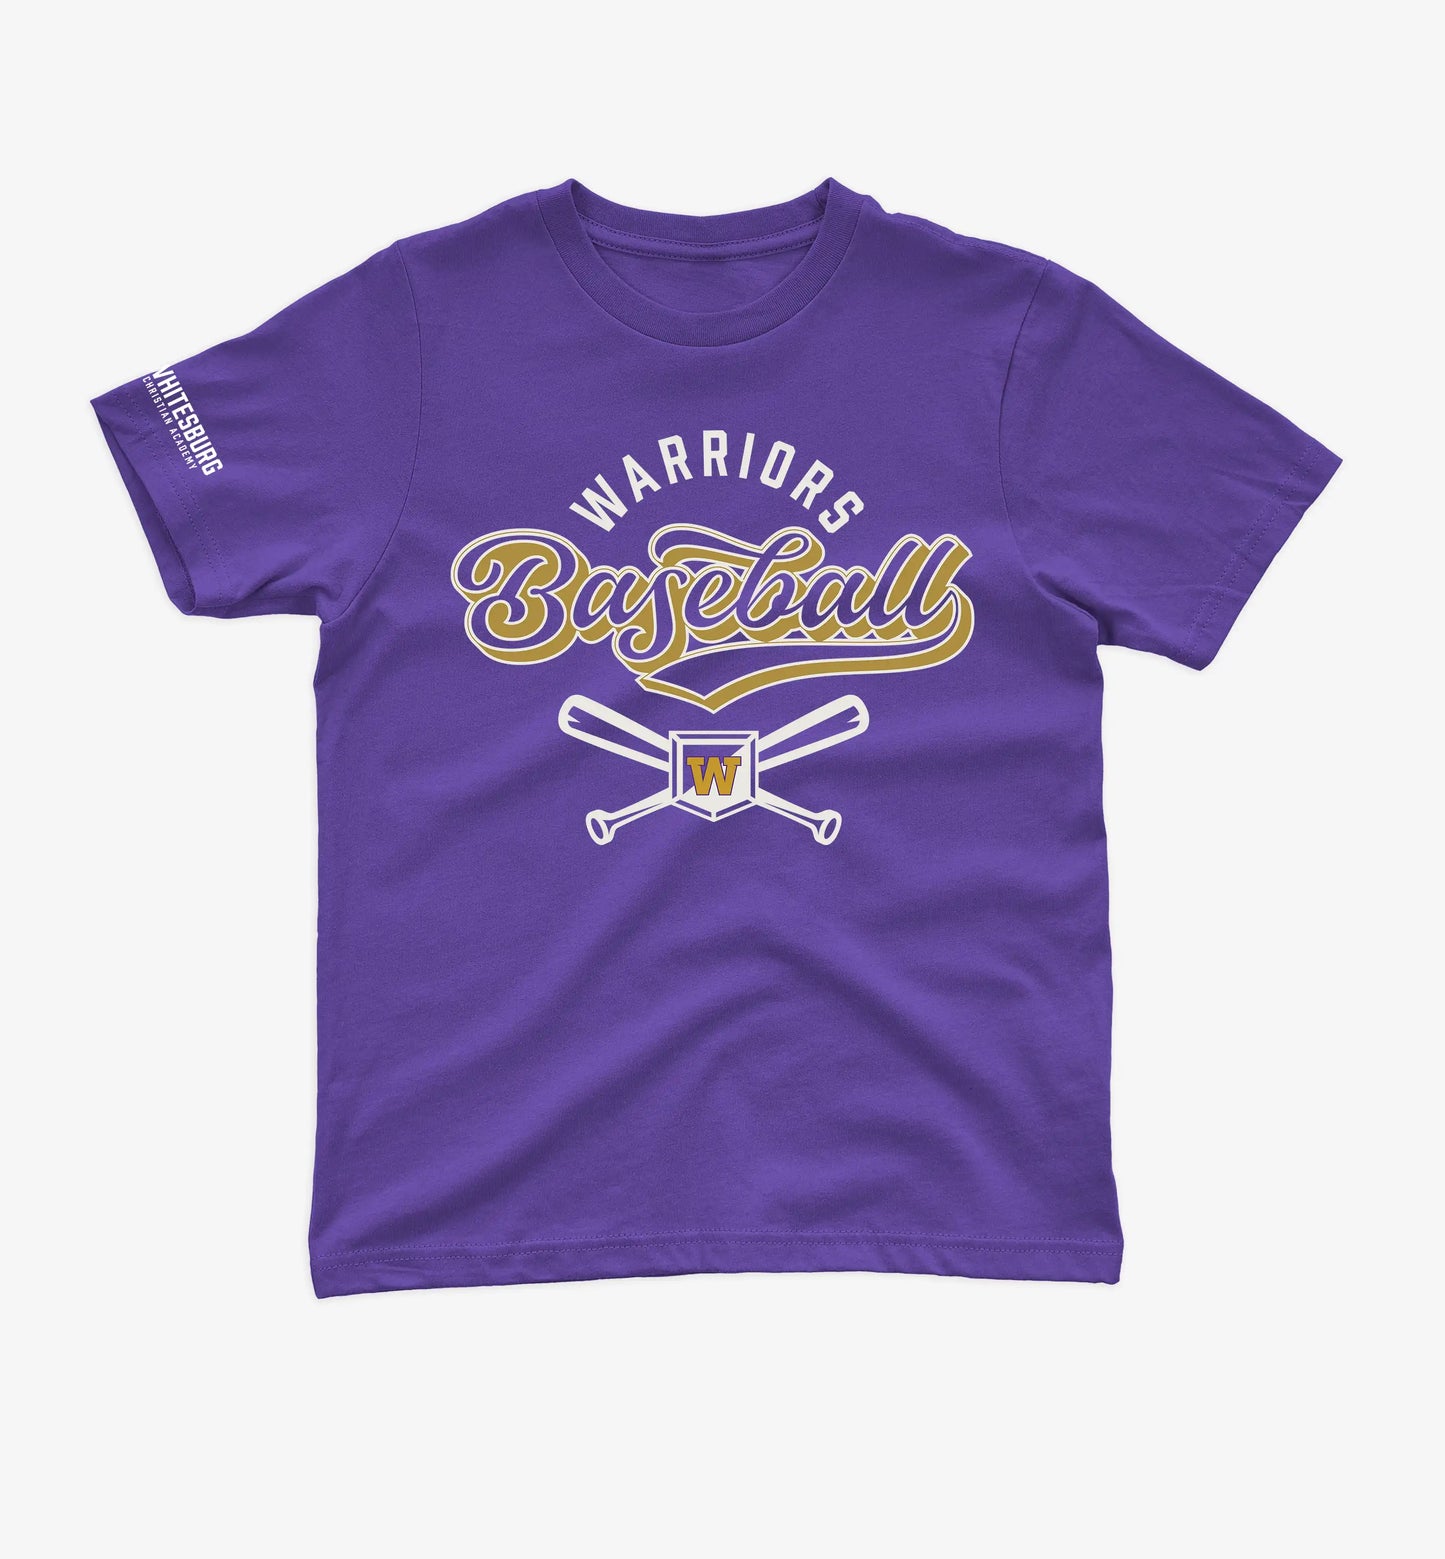 YOUTH BASEBALL - Crossed Bats Tshirt